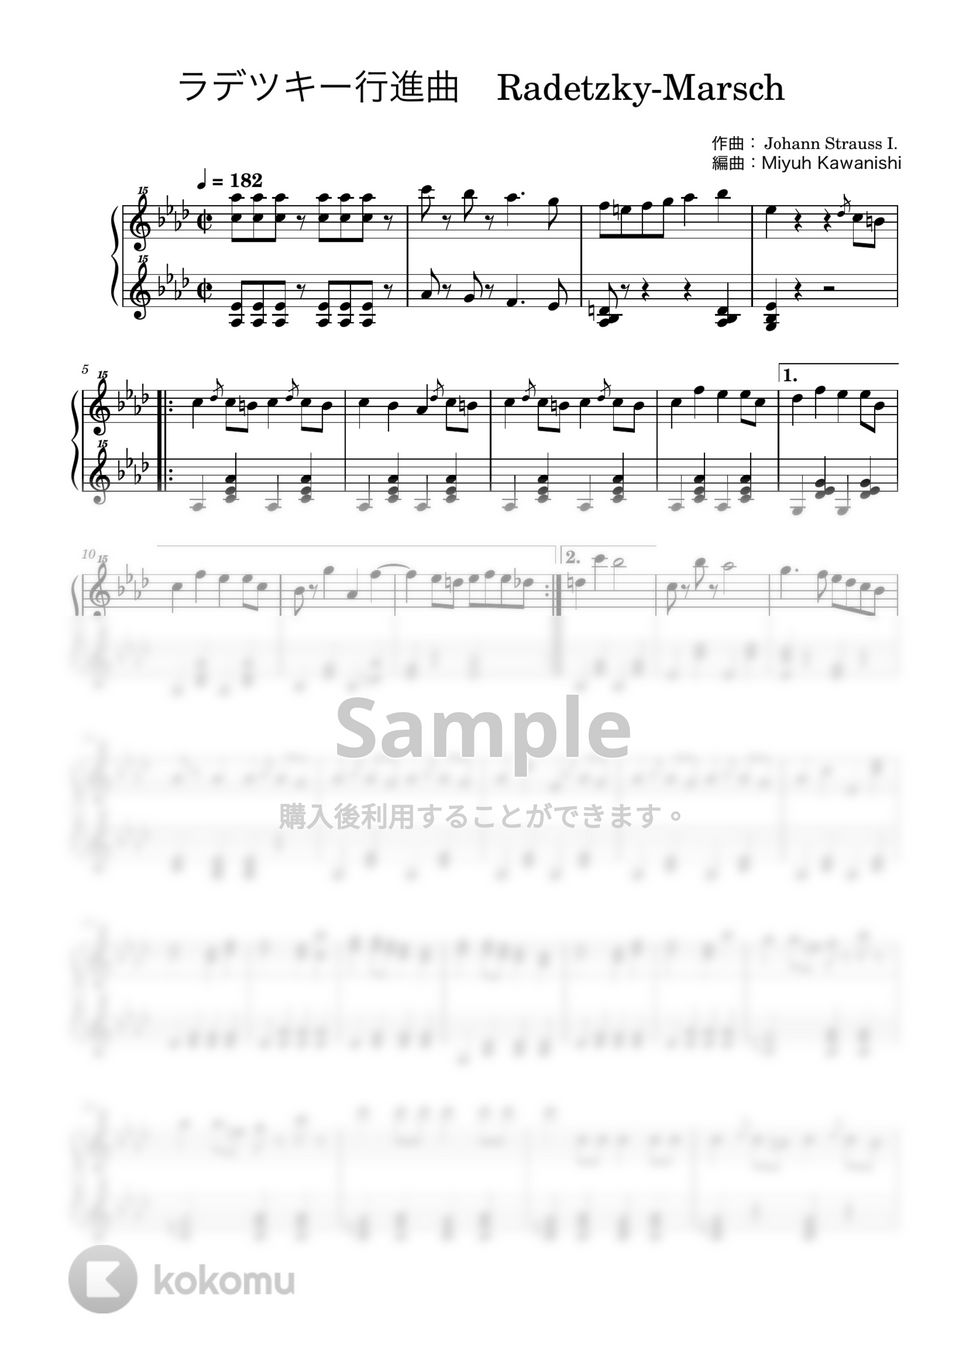 ヨハン・シュトラウス1世 - ラデツキー行進曲 (トイピアノ / クラシック / 32鍵盤) by 川西三裕